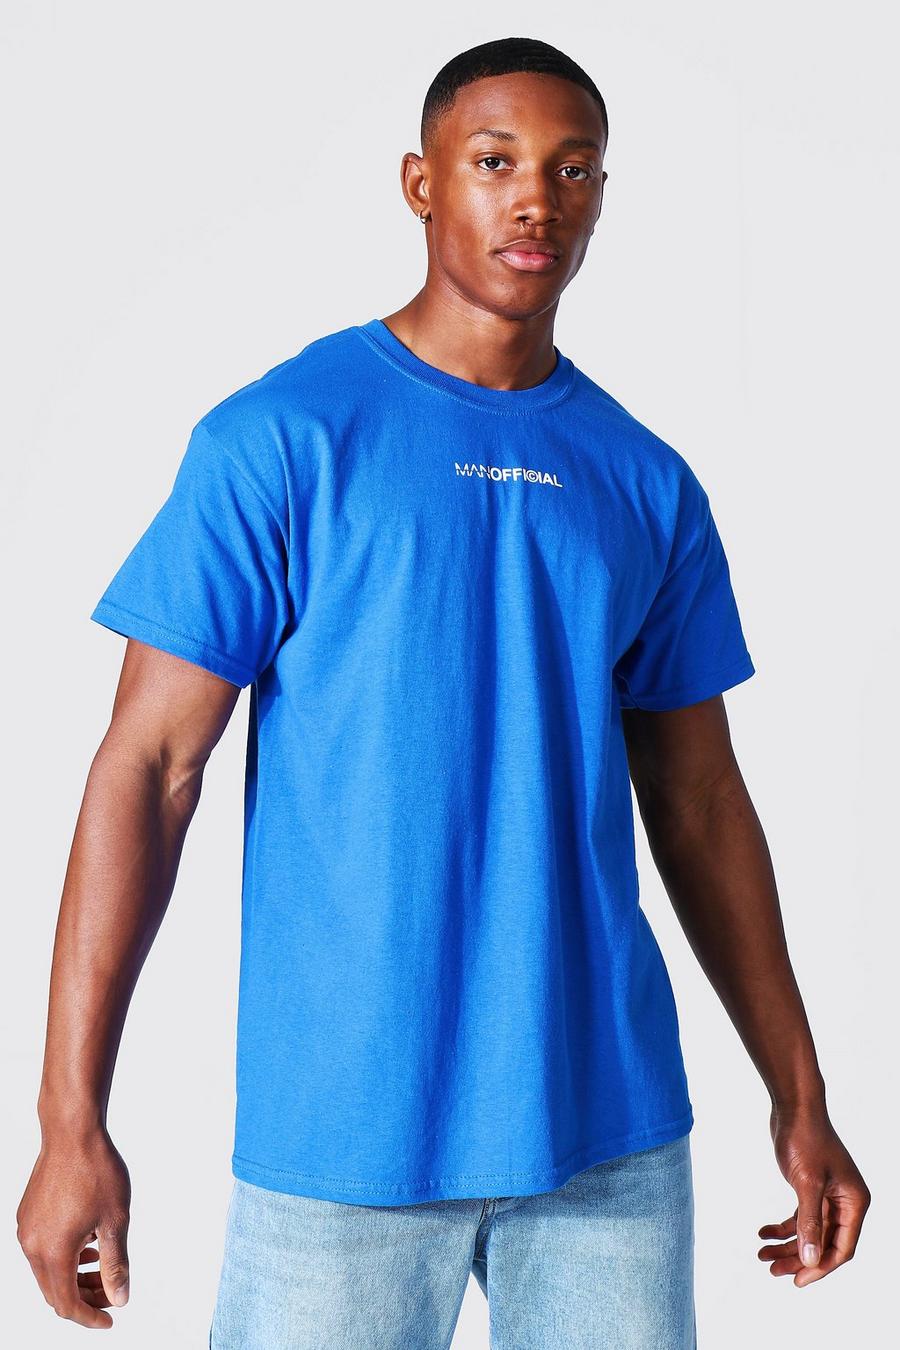 Man Official T-Shirt, Cobalt blue image number 1